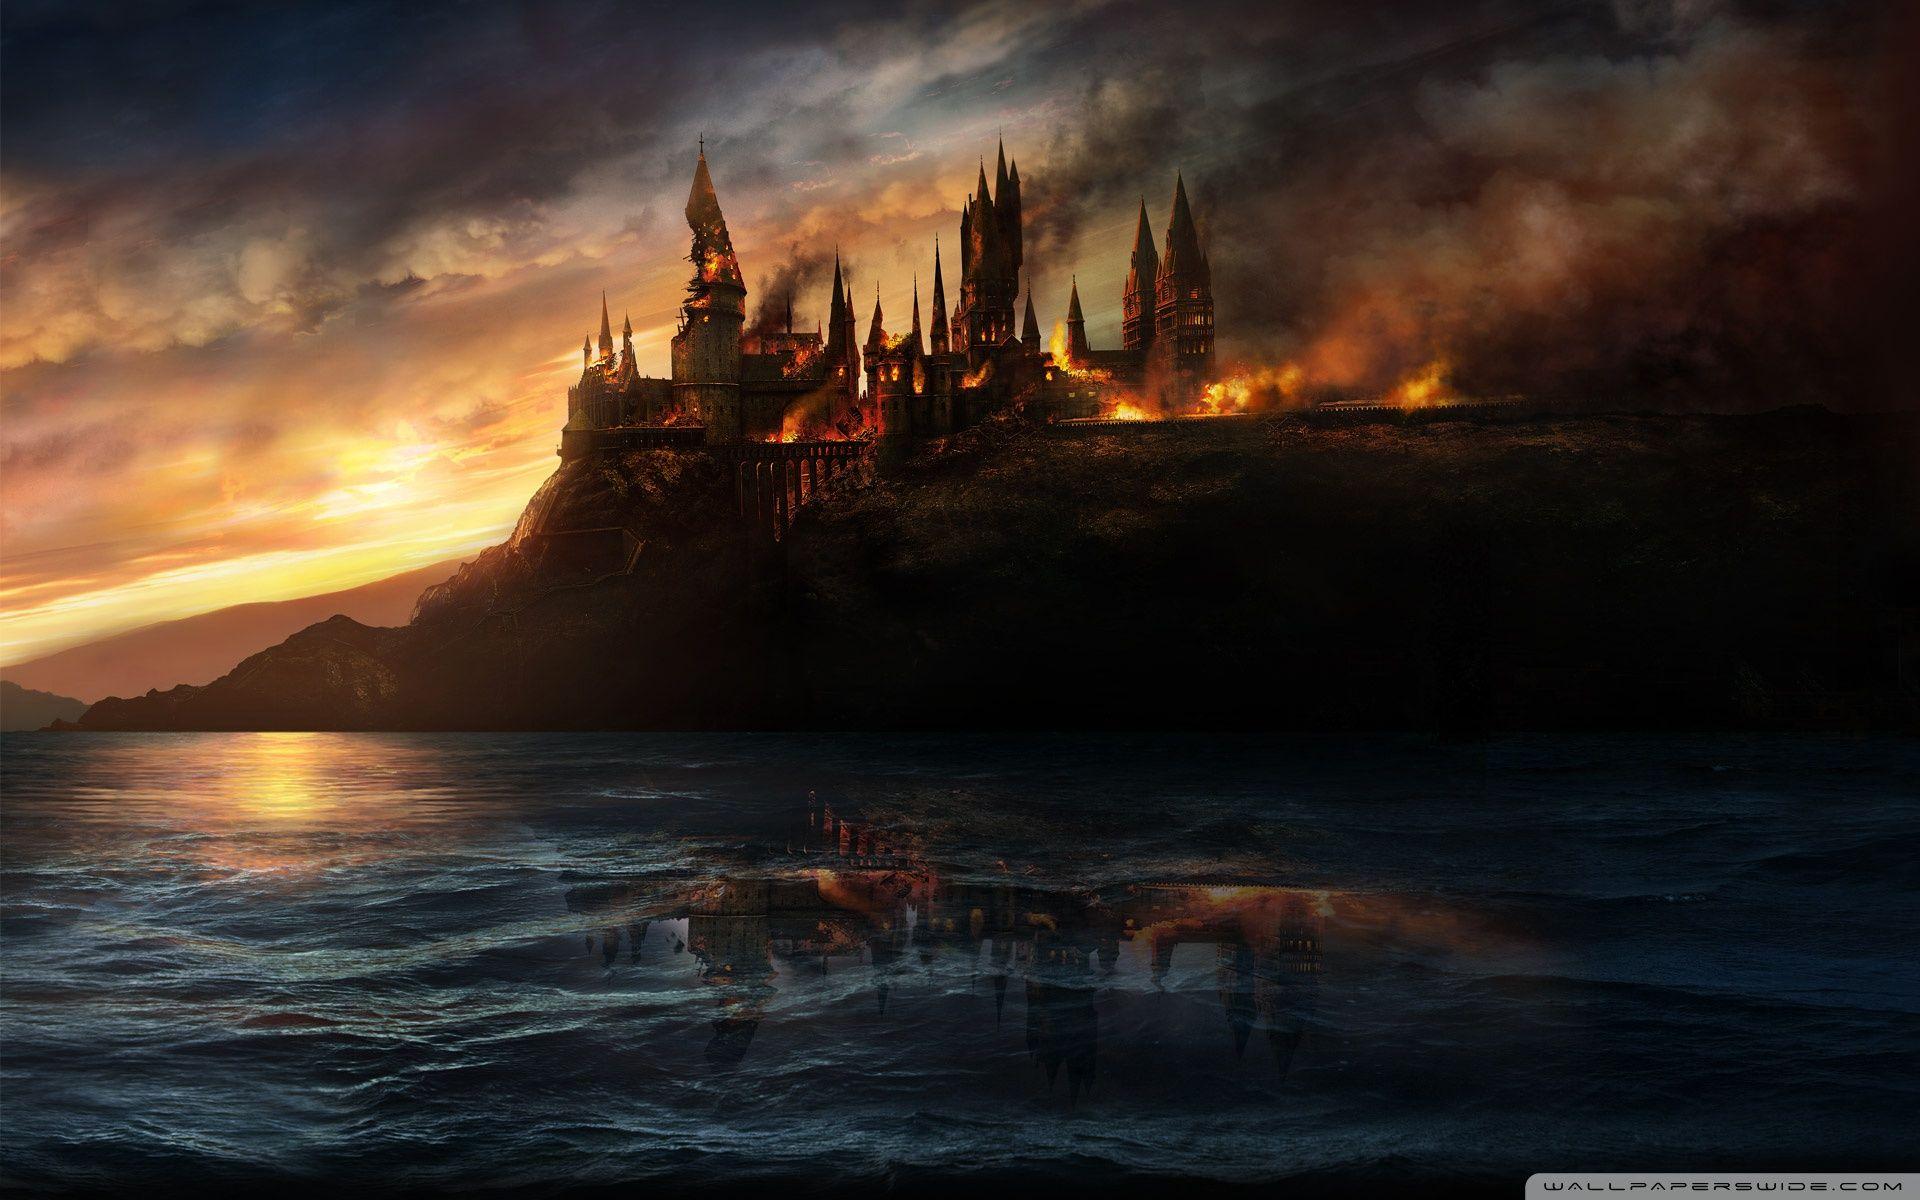 Hình nền Harry Potter chất lượng cao sẽ khiến bạn say đắm với thế giới phép thuật và cổ tích. Một bức tranh đẹp với màu sắc sống động sẽ khiến bạn tưởng như đang đi vào cuốn sách giáo khoa. Cùng hòa mình với Ron, Harry và Hermione trong cuộc phiêu lưu kỳ thú, trên nền tảng của một hình nền chất lượng cao.